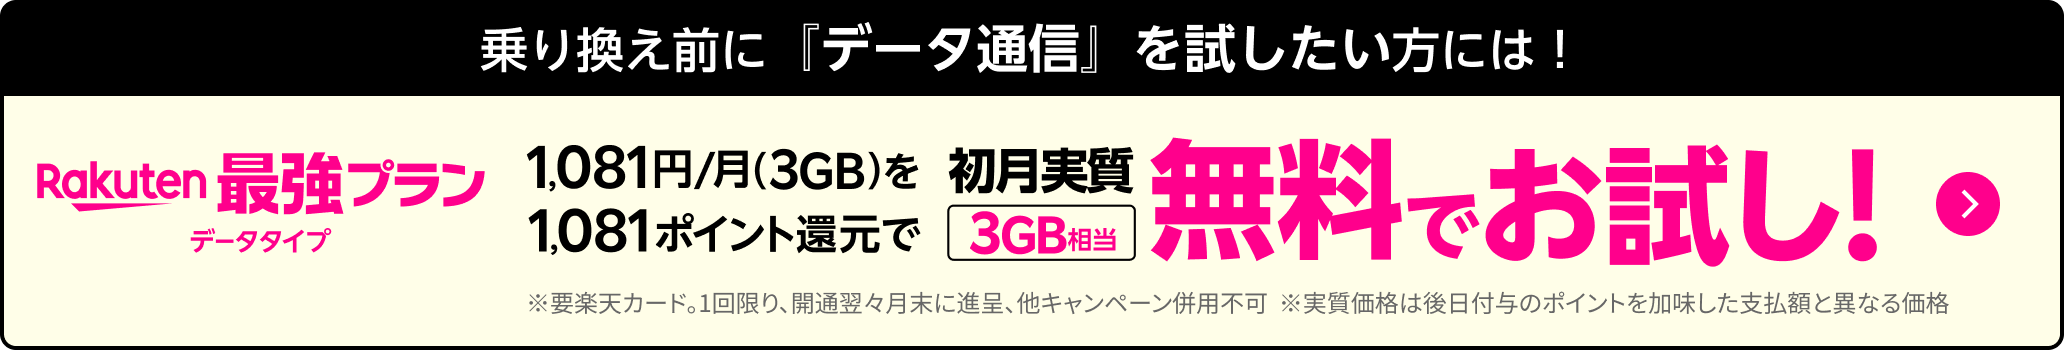 乗り換え前に『データ通信』を試したい方にはRakuten最強プランデータタイプ 1,081円/月(3GB)を1,081ポイント還元で初月実質3GB相当無料でお試し！